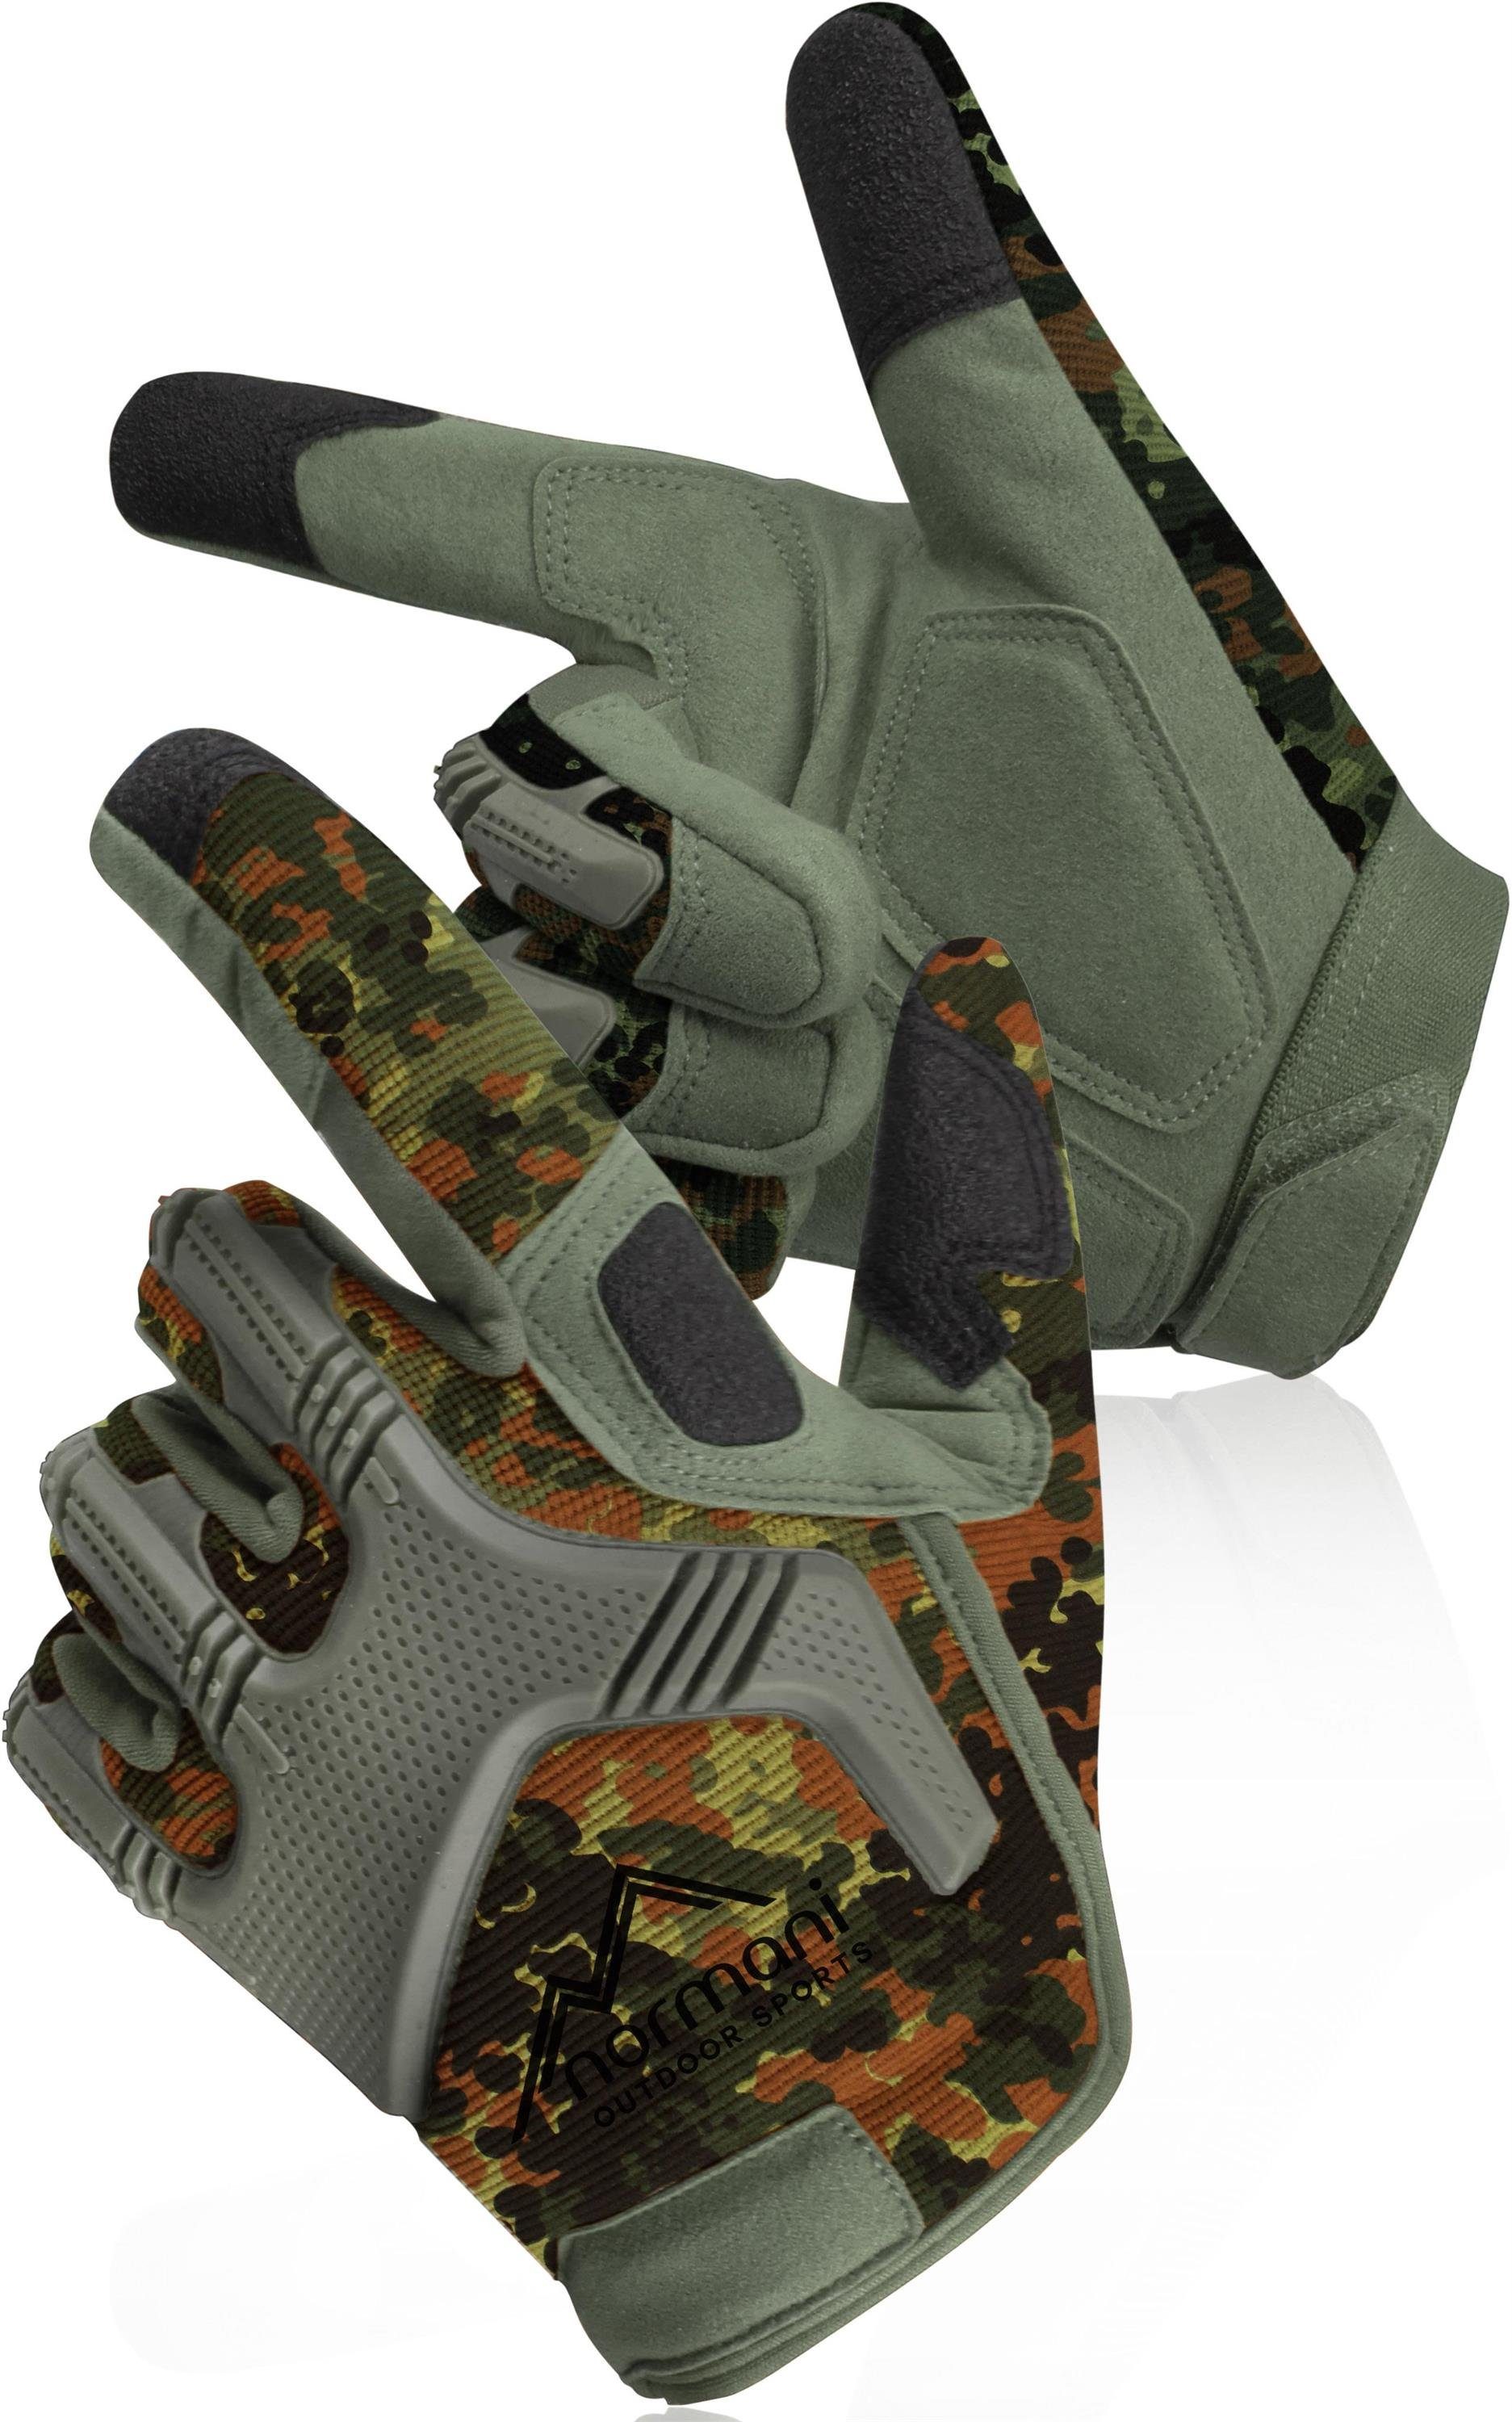 normani Multisporthandschuhe Fingerhandschuhe ARMY GLOVES Specialist Militärische Einsatzhandschuhe Taktische Paintballhandschuhe Sporthandschuhe Outdoor Motorrad Handschuhe Flecktarn